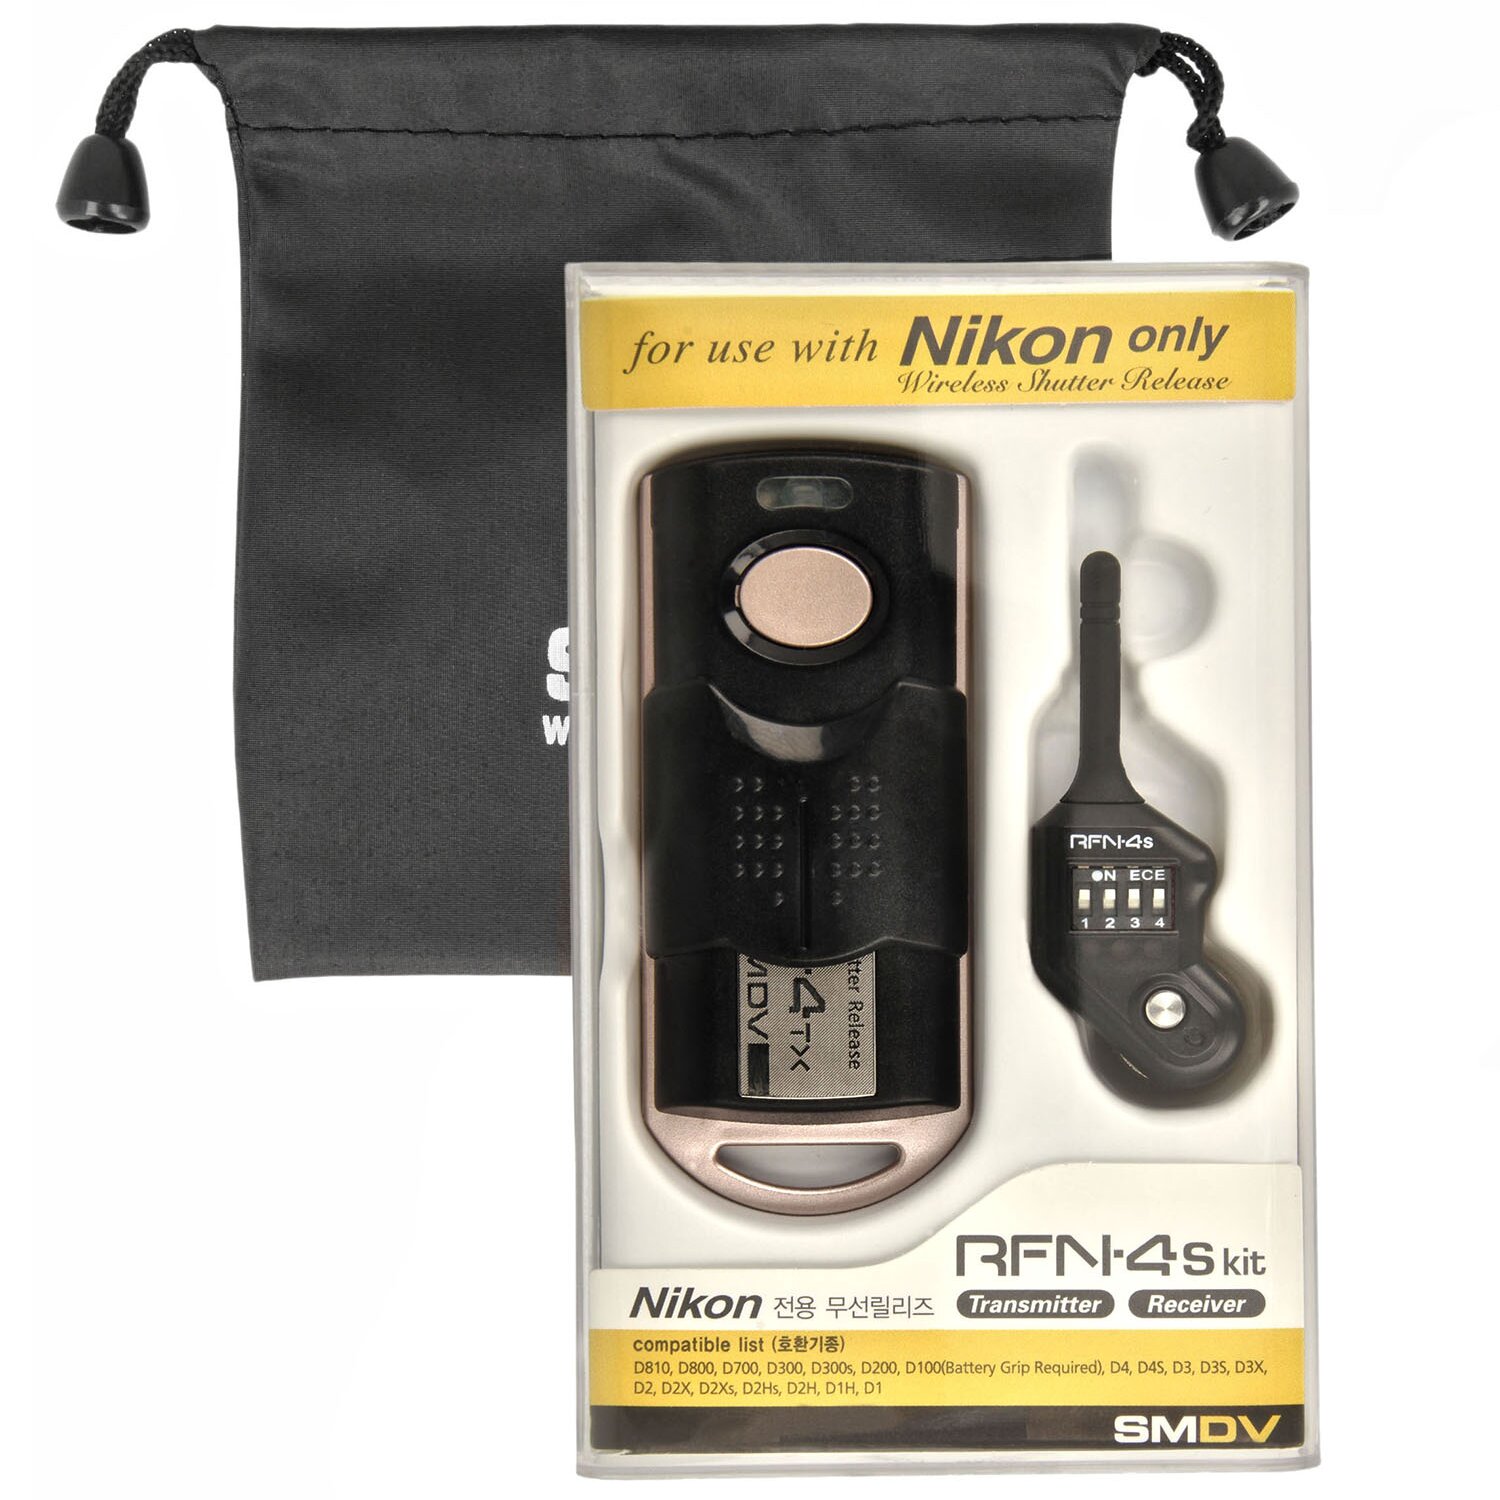 2,4Ghz 16 Kanäle Kompatibel für Nikon DSLR Kameras Reichweite bis 100m Impulsfoto SMDV RFN-4s Funkfernauslöser 